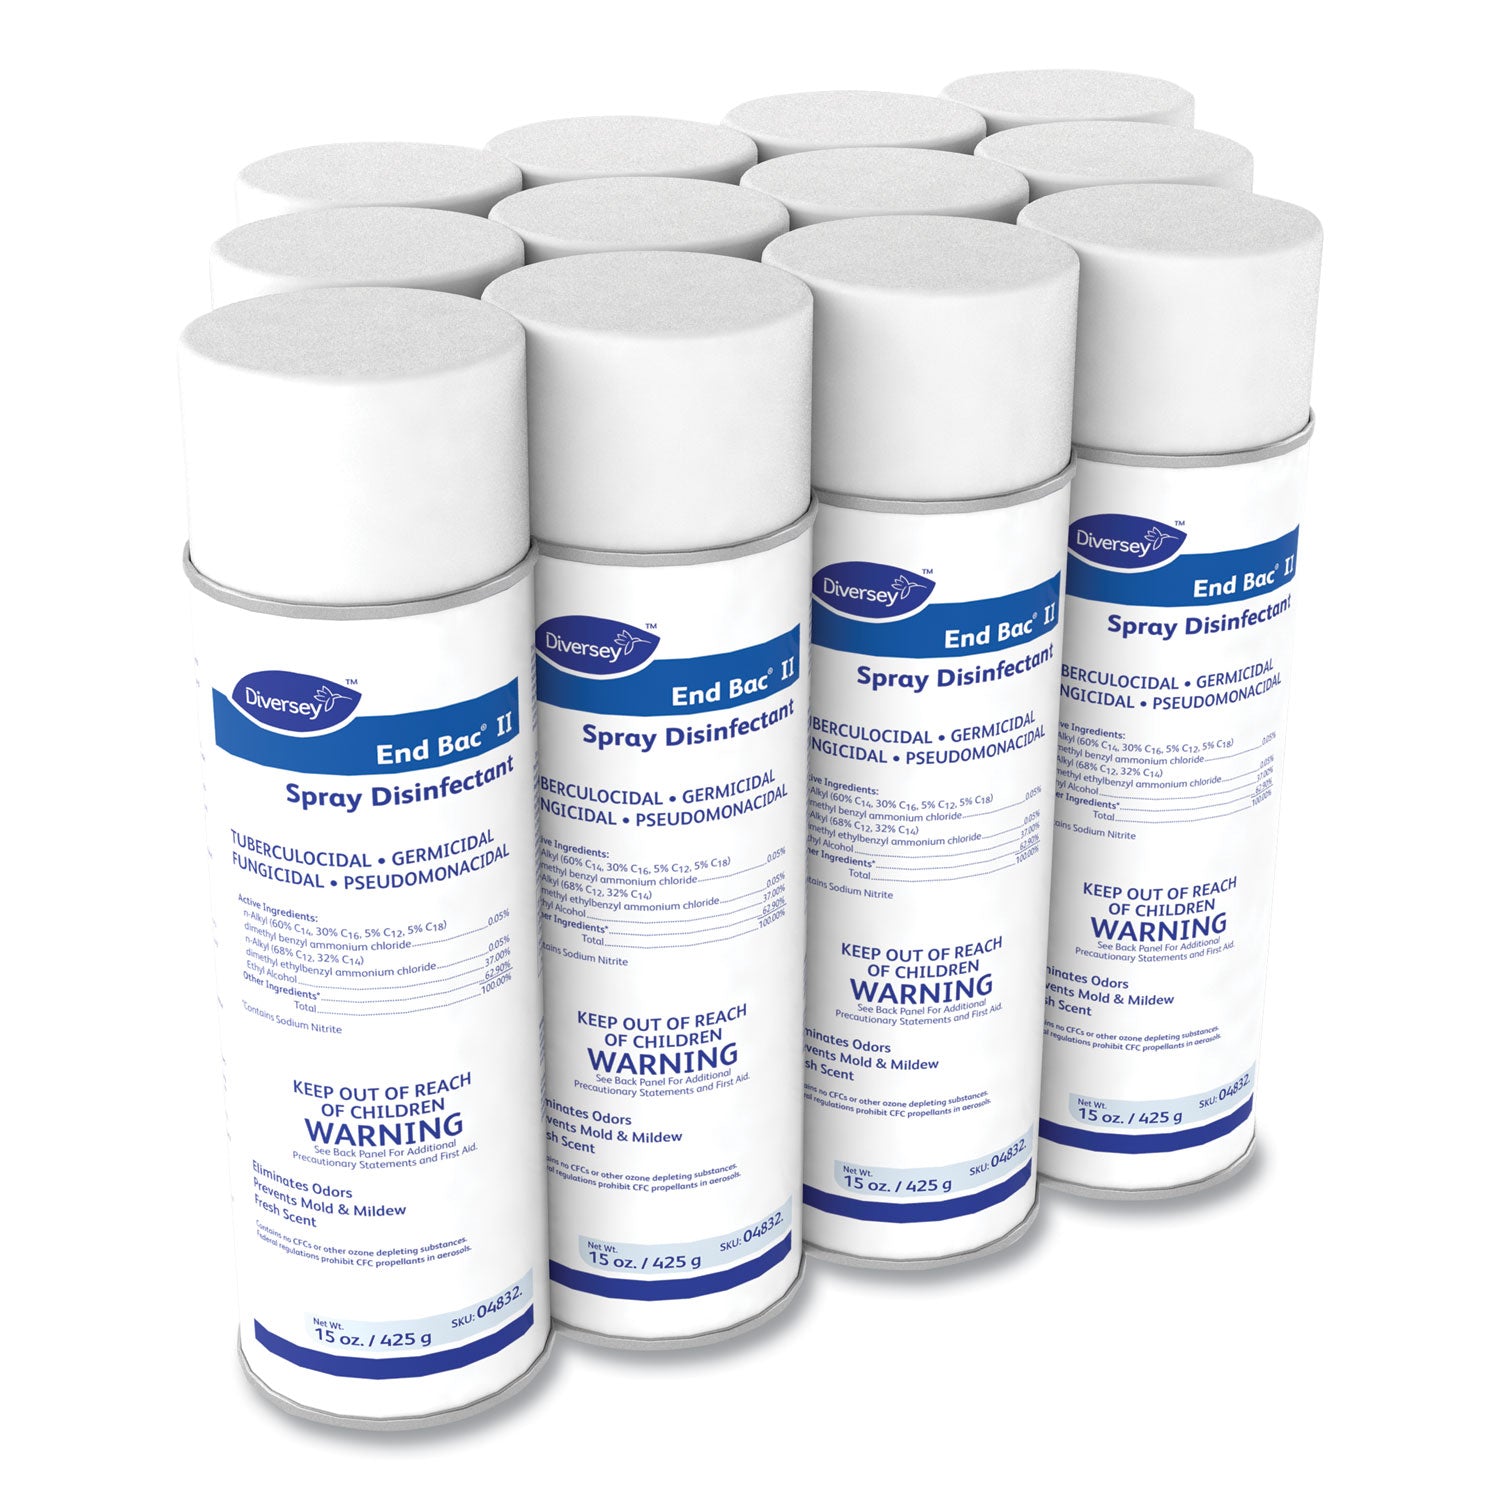 end-bac-ii-spray-disinfectant-fresh-scent-15-oz-aerosol-spray-12-carton_dvo04832 - 4